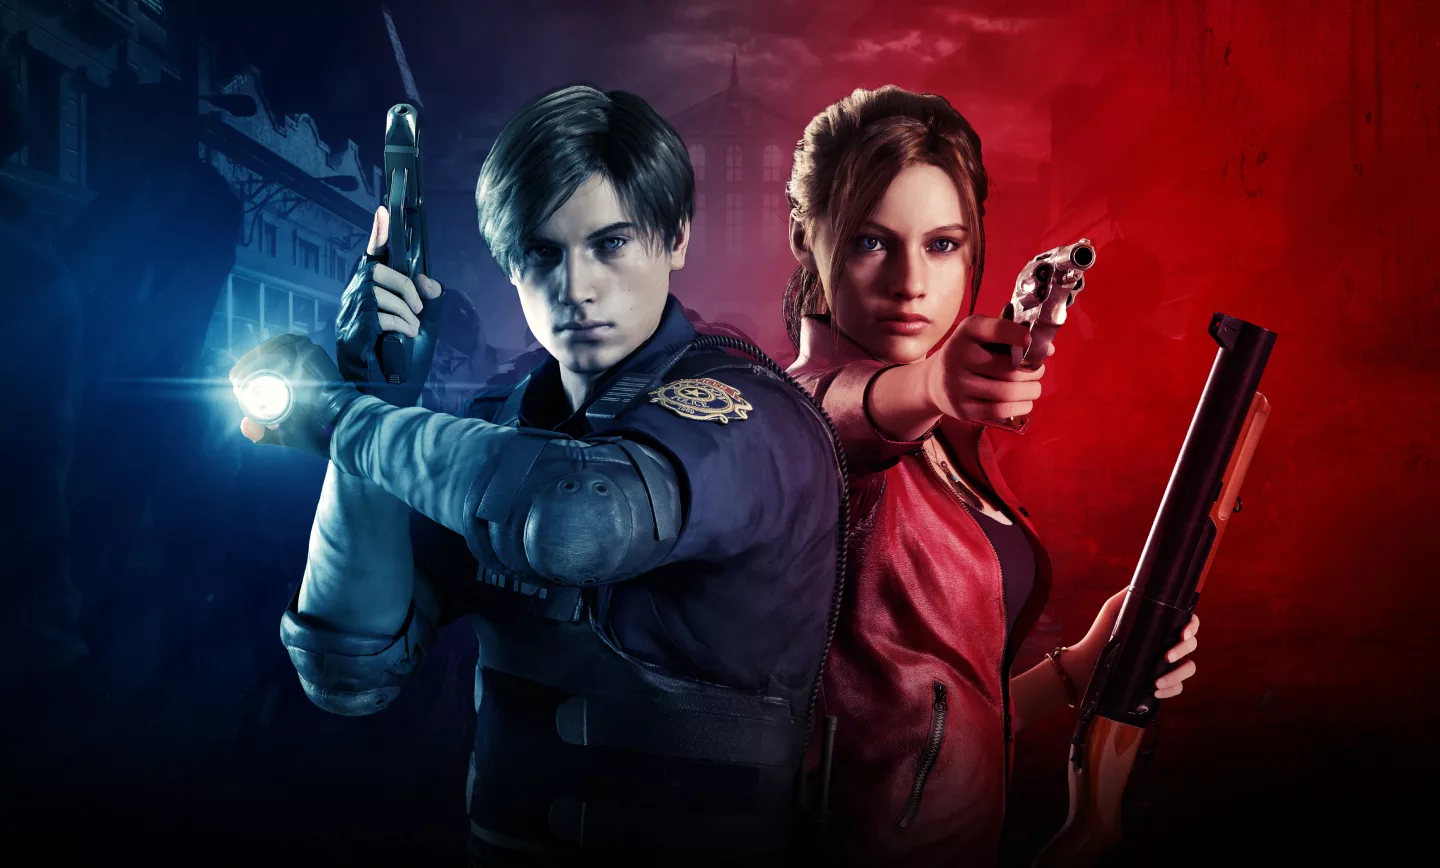 بازی Resident Evil 2 Remake پس از چهار سال آپدیت دریافت کرد